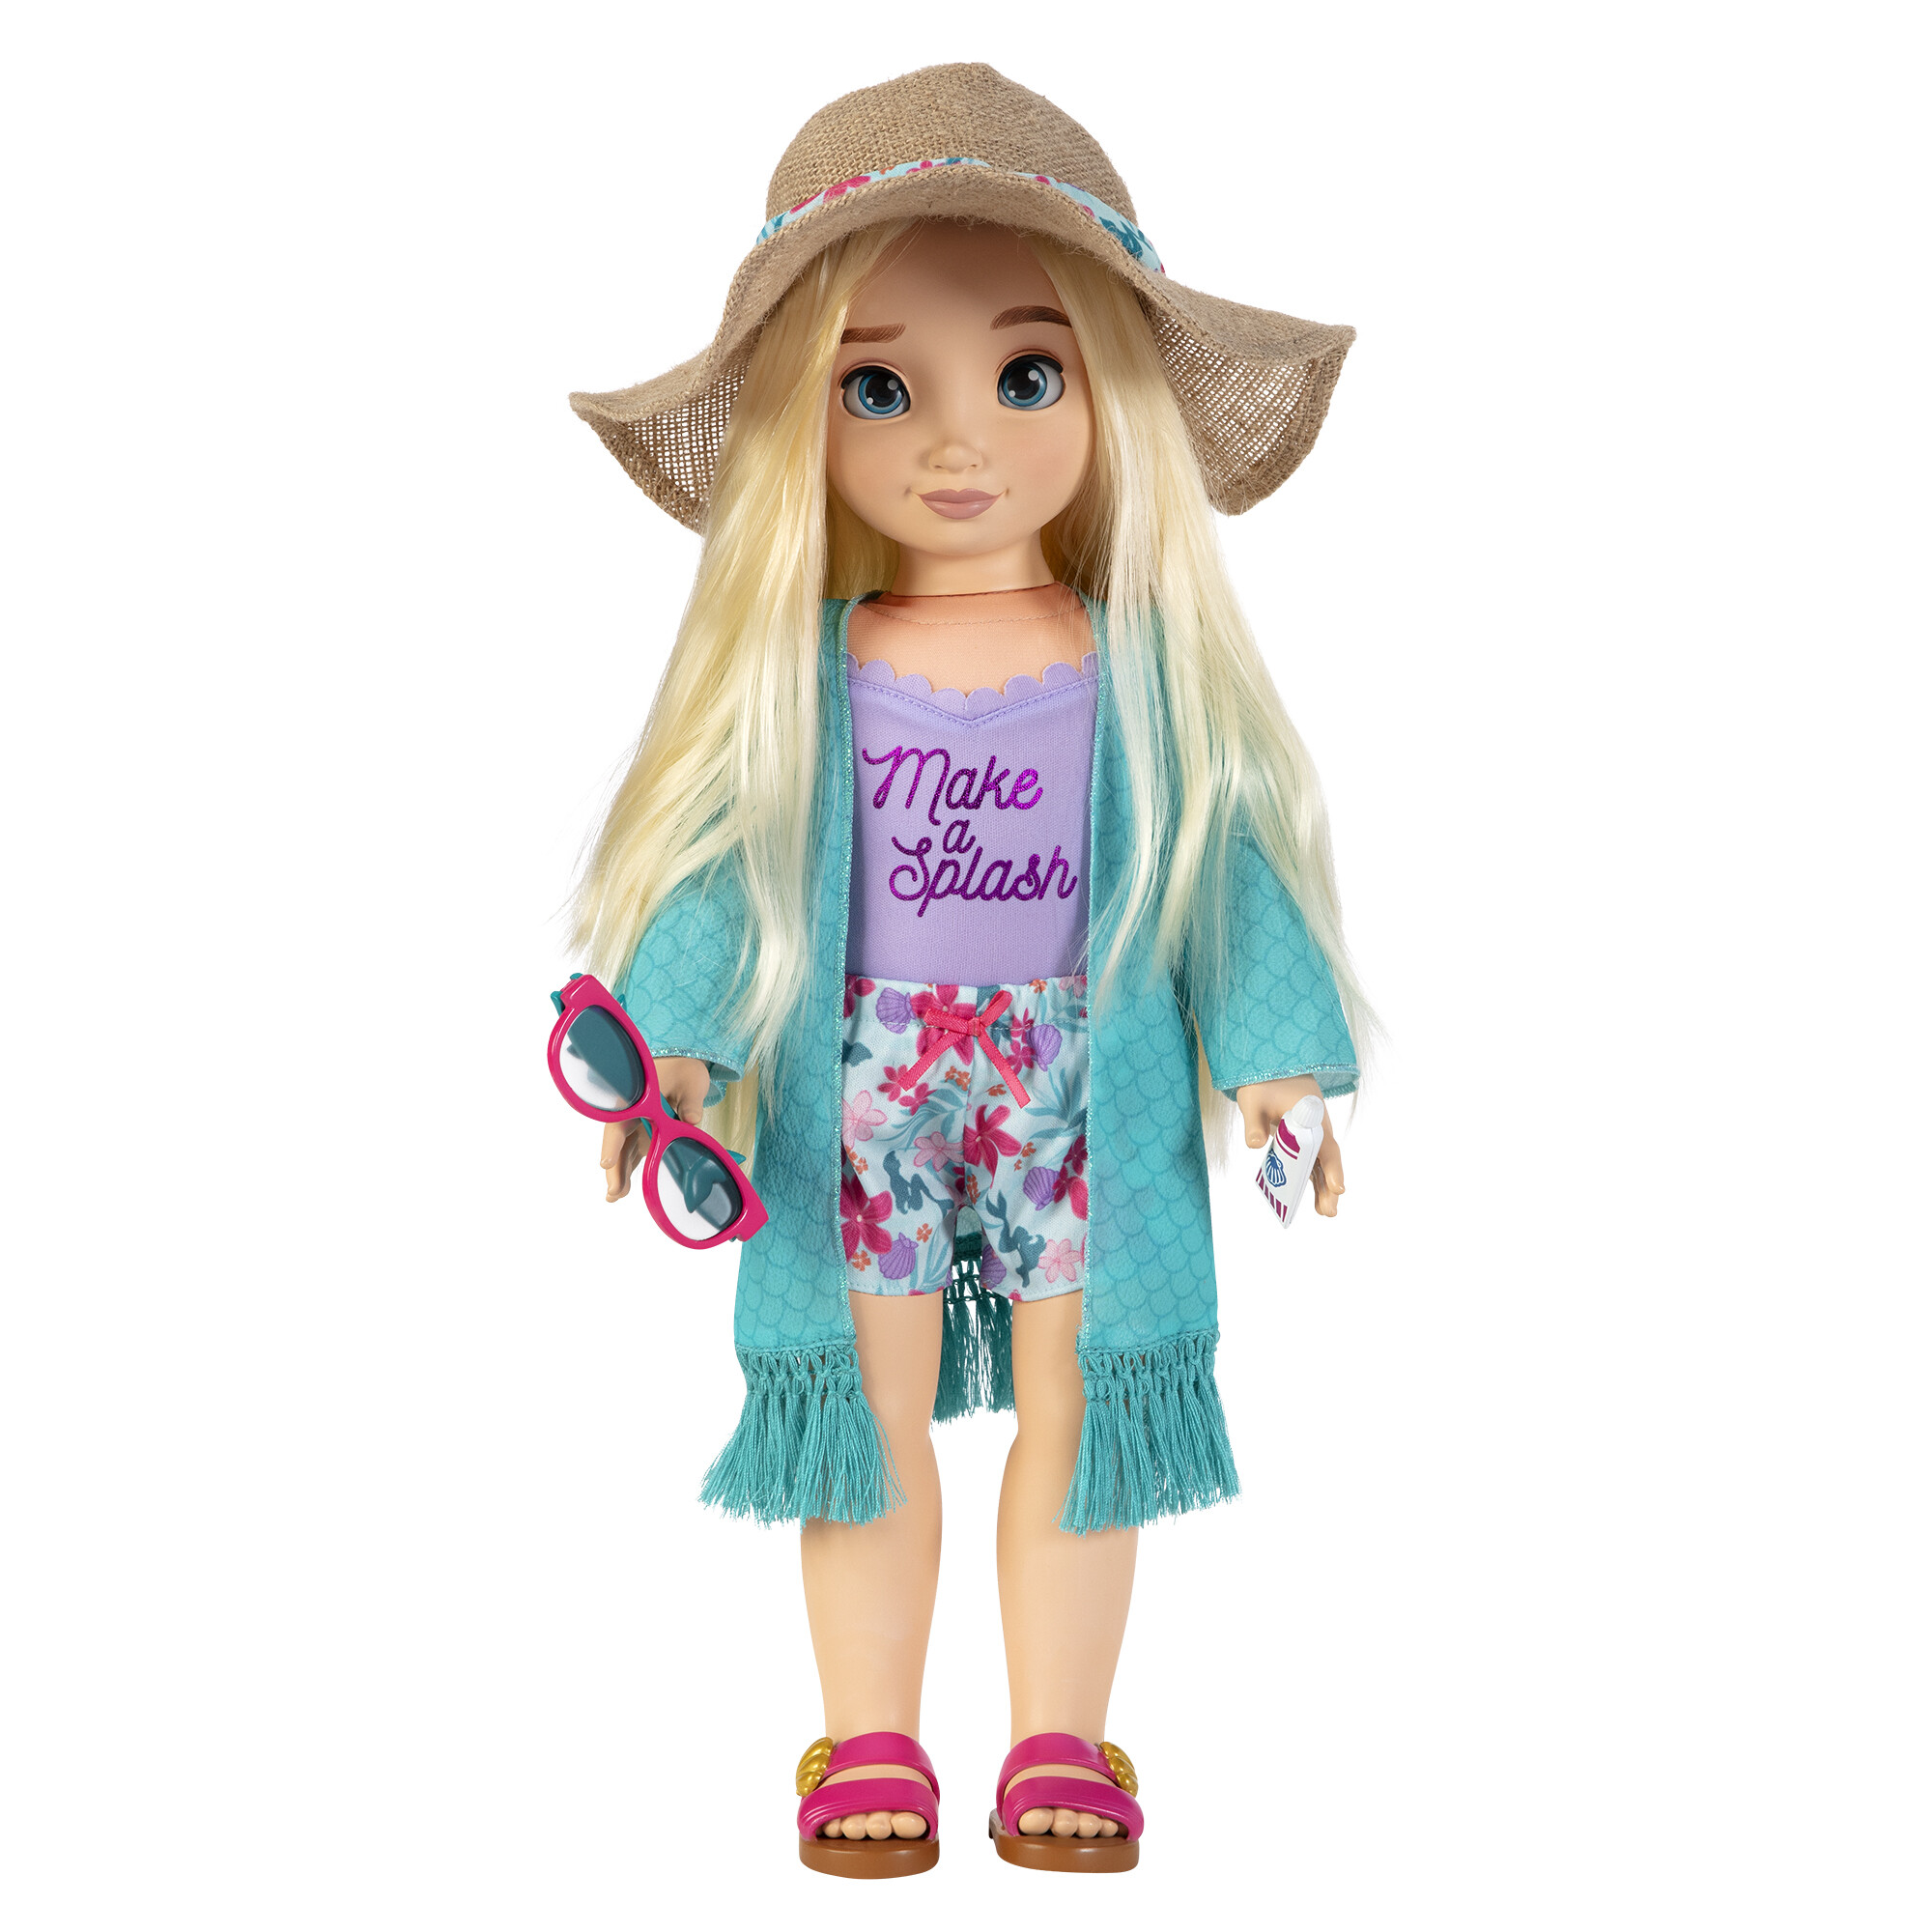 Disney ily 4ever bambola 46 cm ispirata ad ariel con capelli lunghi e accessori - DISNEY PRINCESS